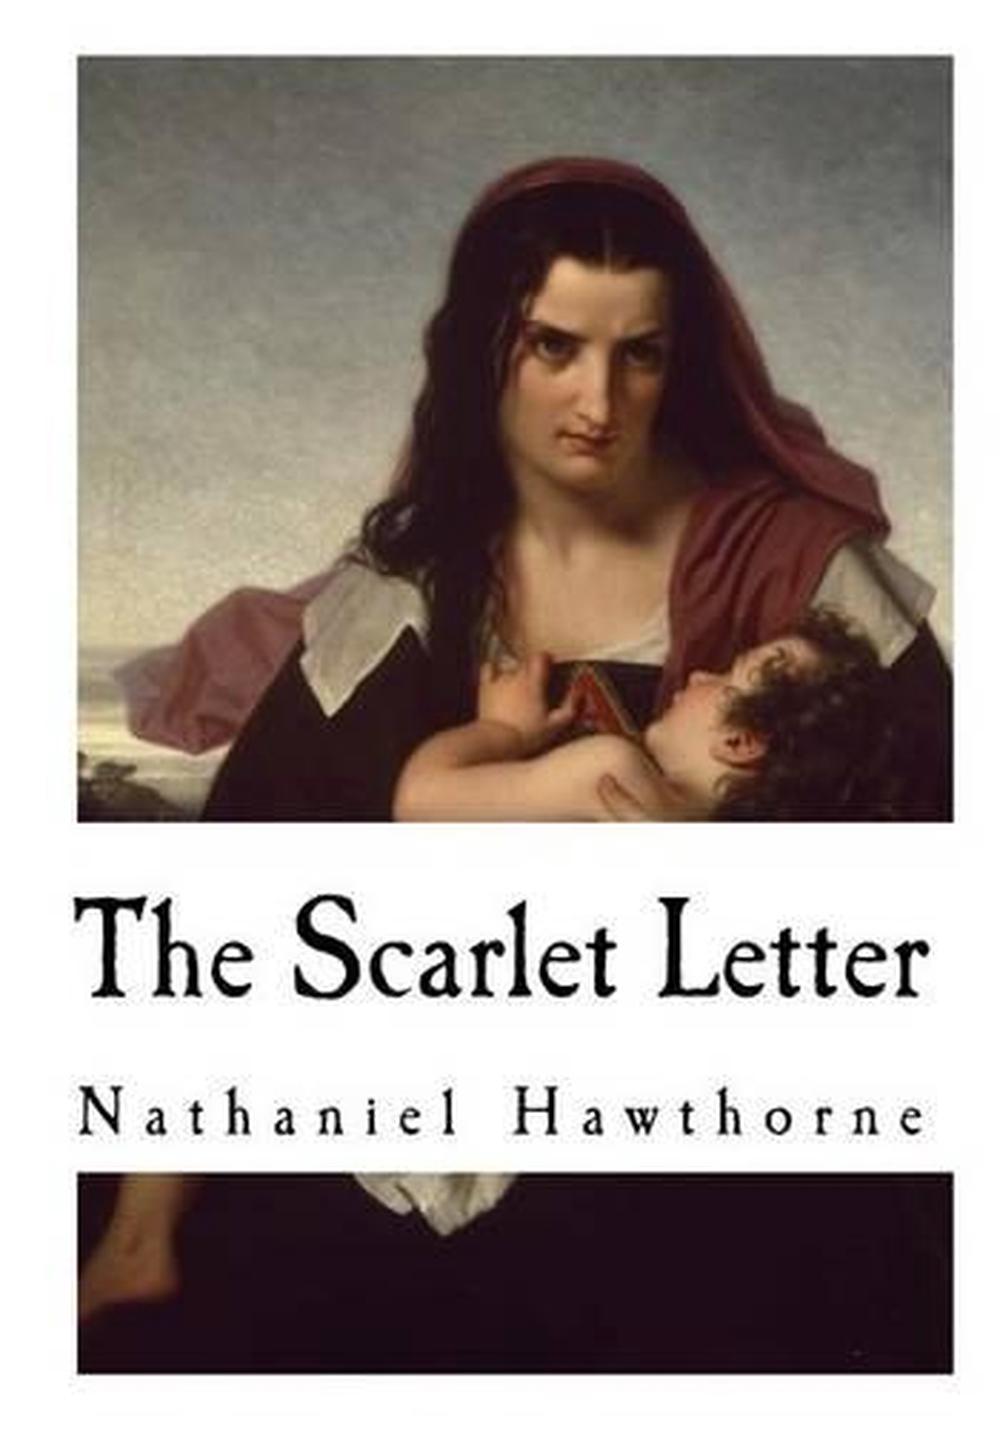 nathaniel hawthorne novel the scarlet letter